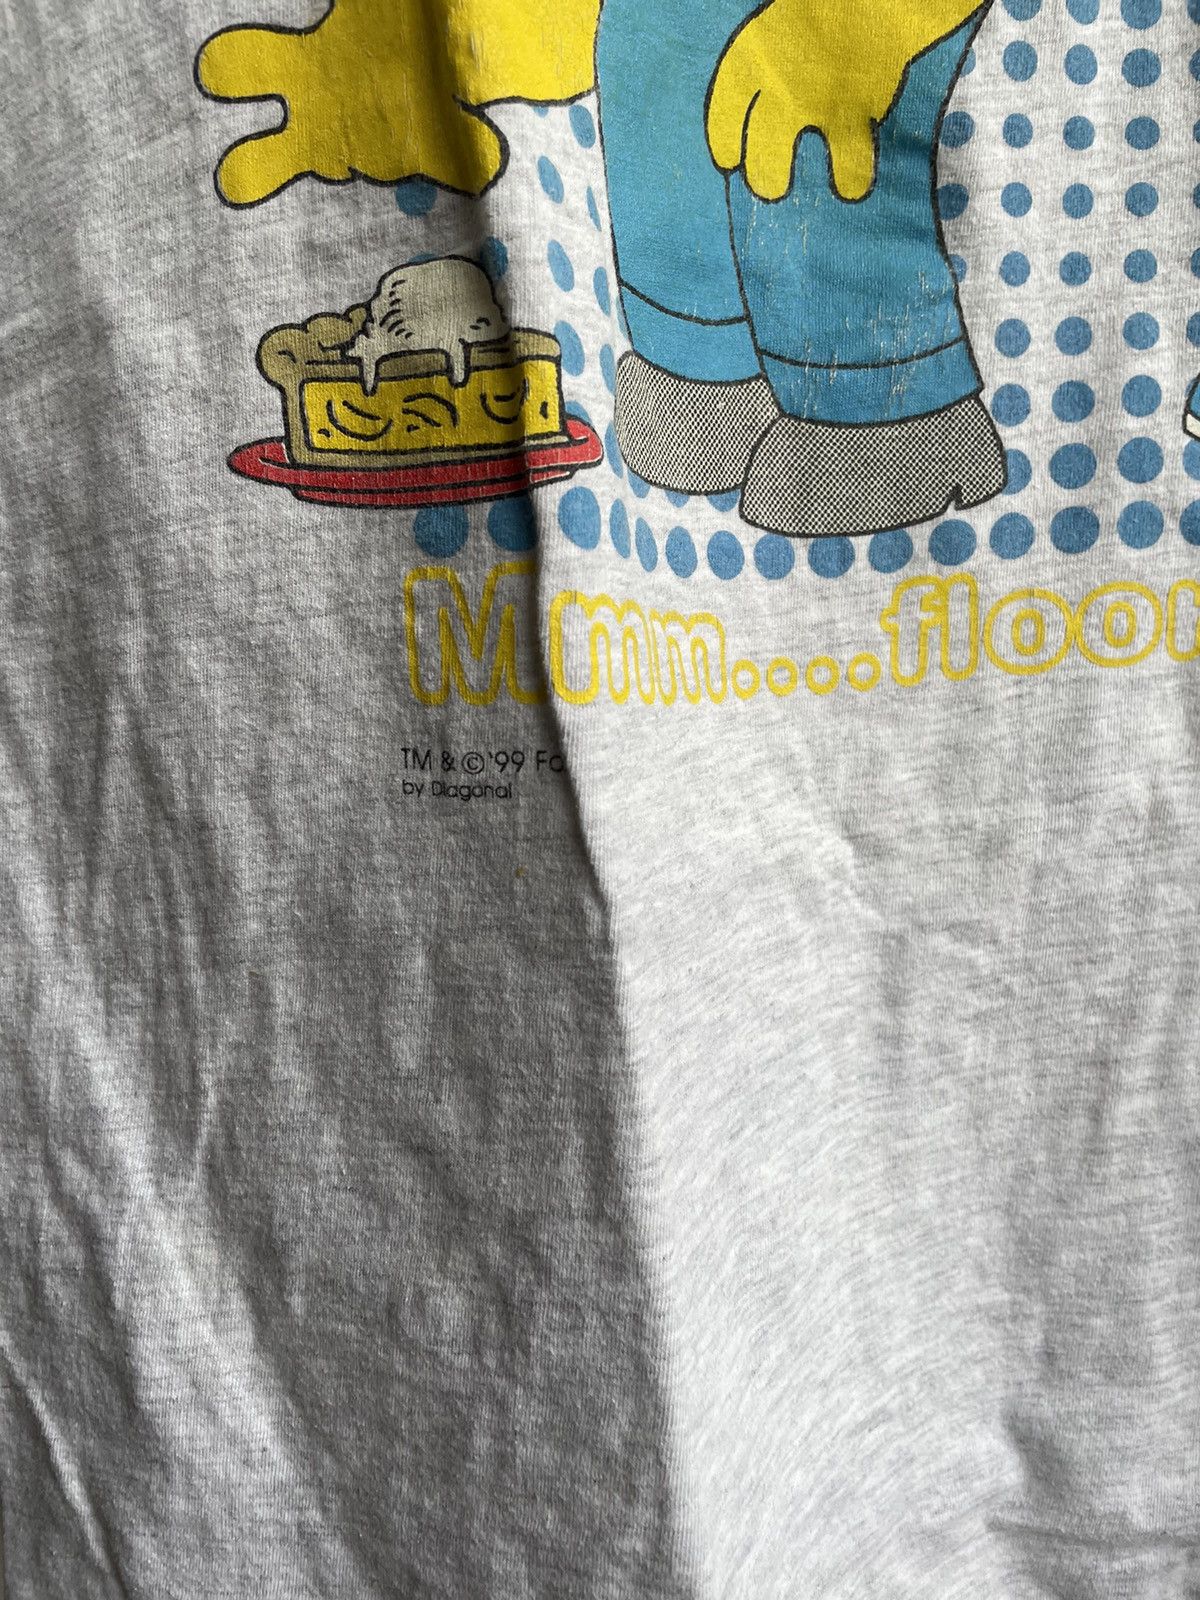 Vintage Vintage 1999 The Simpsons T-Shirt Size US M / EU 48-50 / 2 - 4 Thumbnail